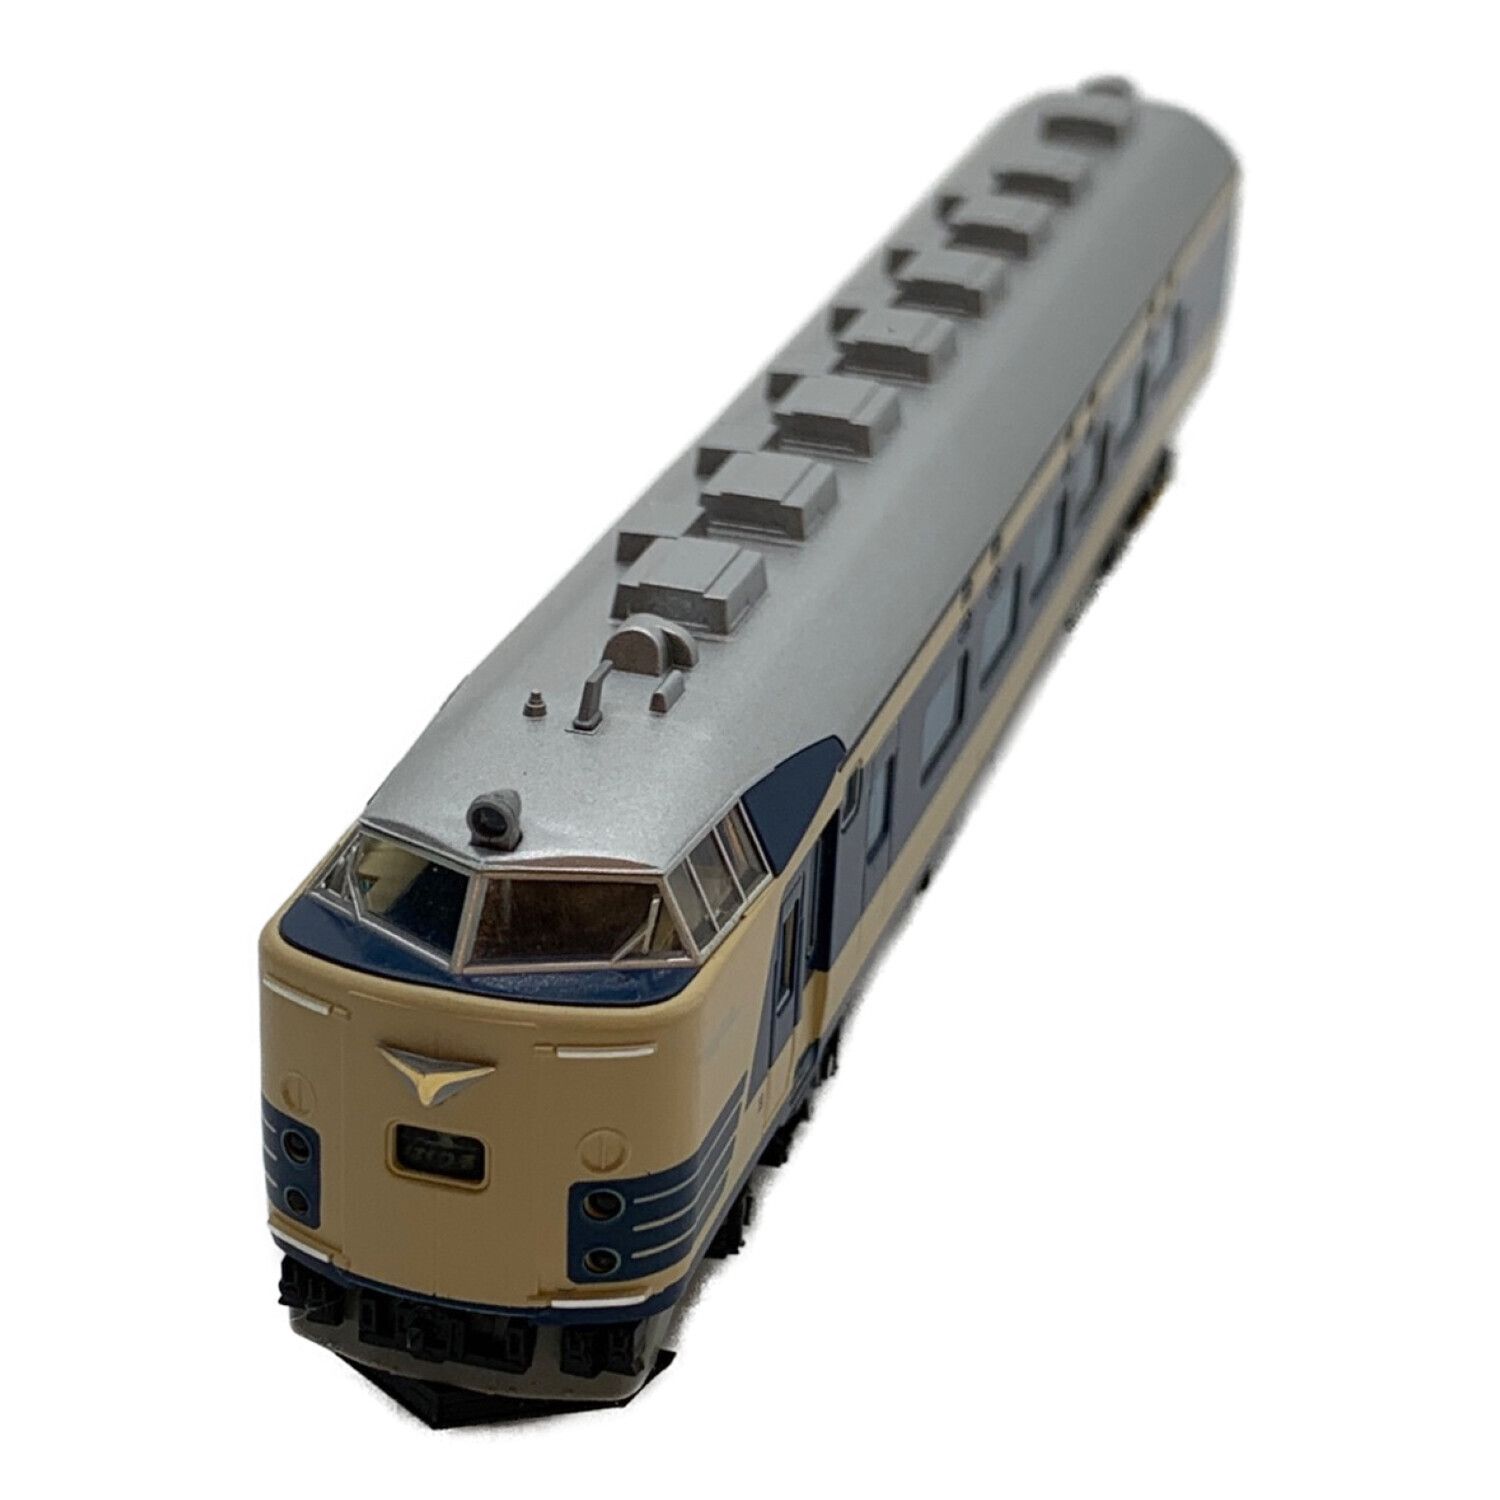 Nゲージ鉄道模型KATO 583系 交直両用特急形寝台電車 6両セット - 鉄道模型